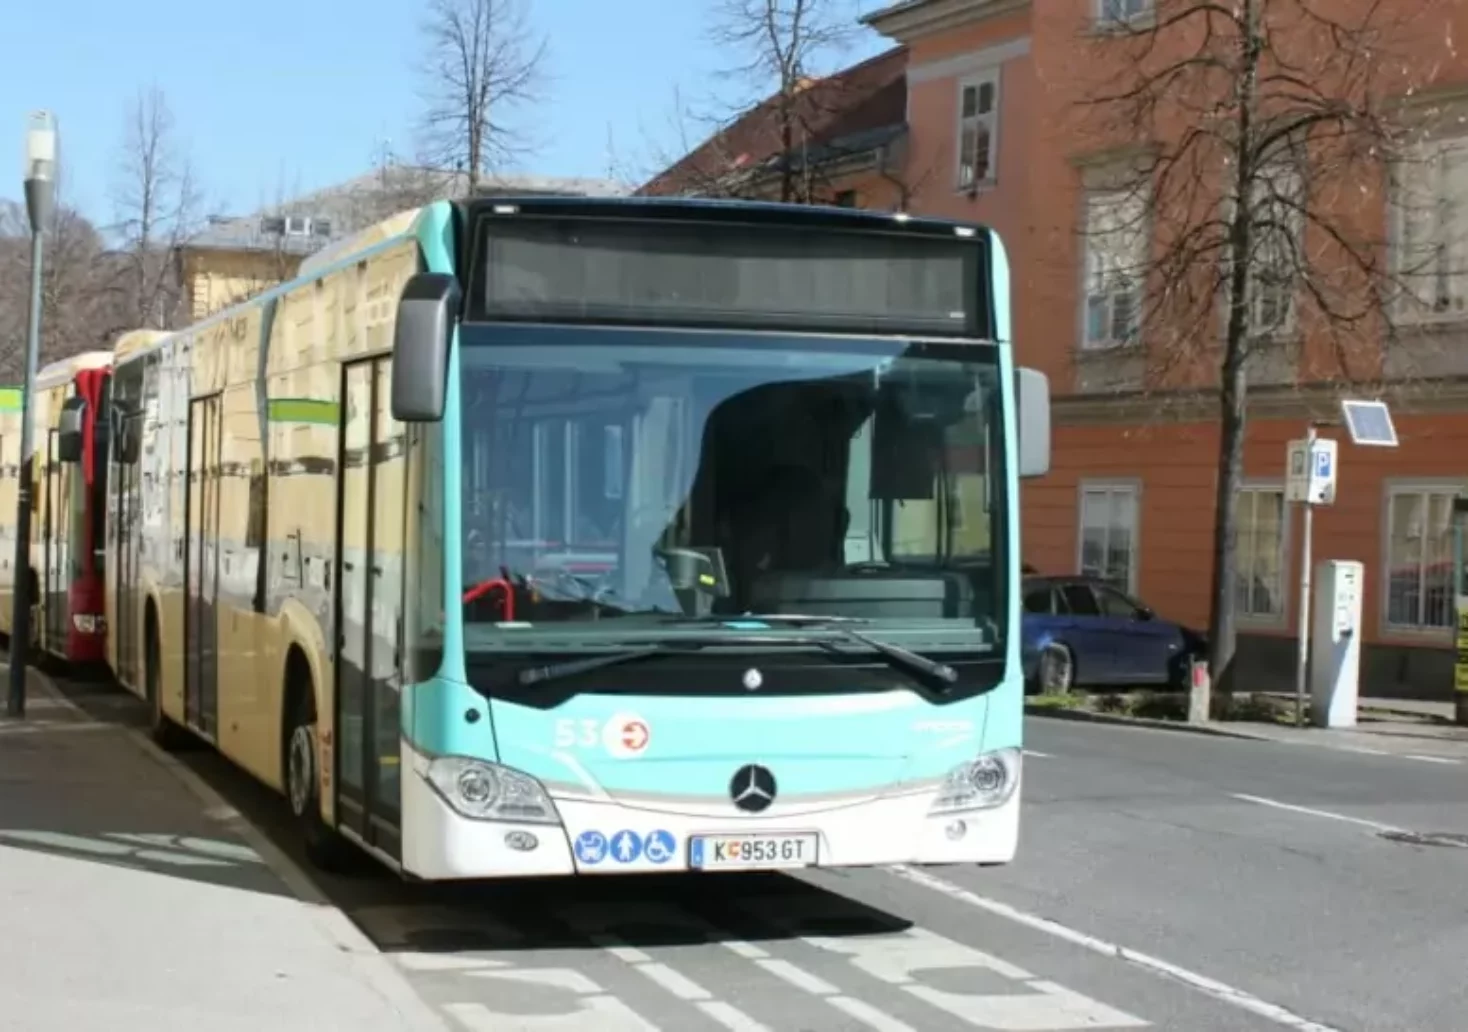 Klagenfurt: Weitere 6 Mio. Euro für Ausbau des städtischen Busverkehrs